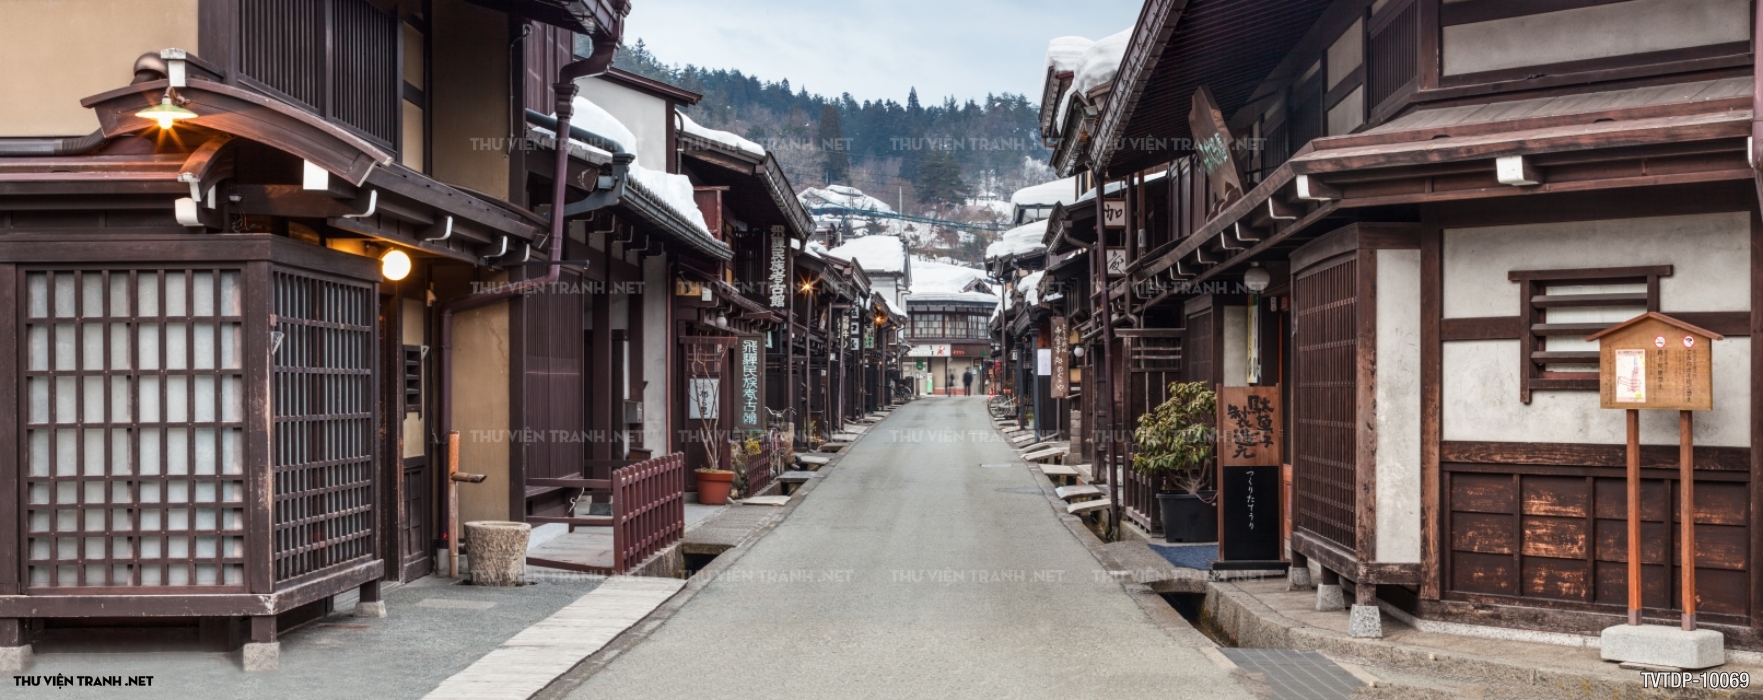 Cảnh đường phố cổ Nhật Bản